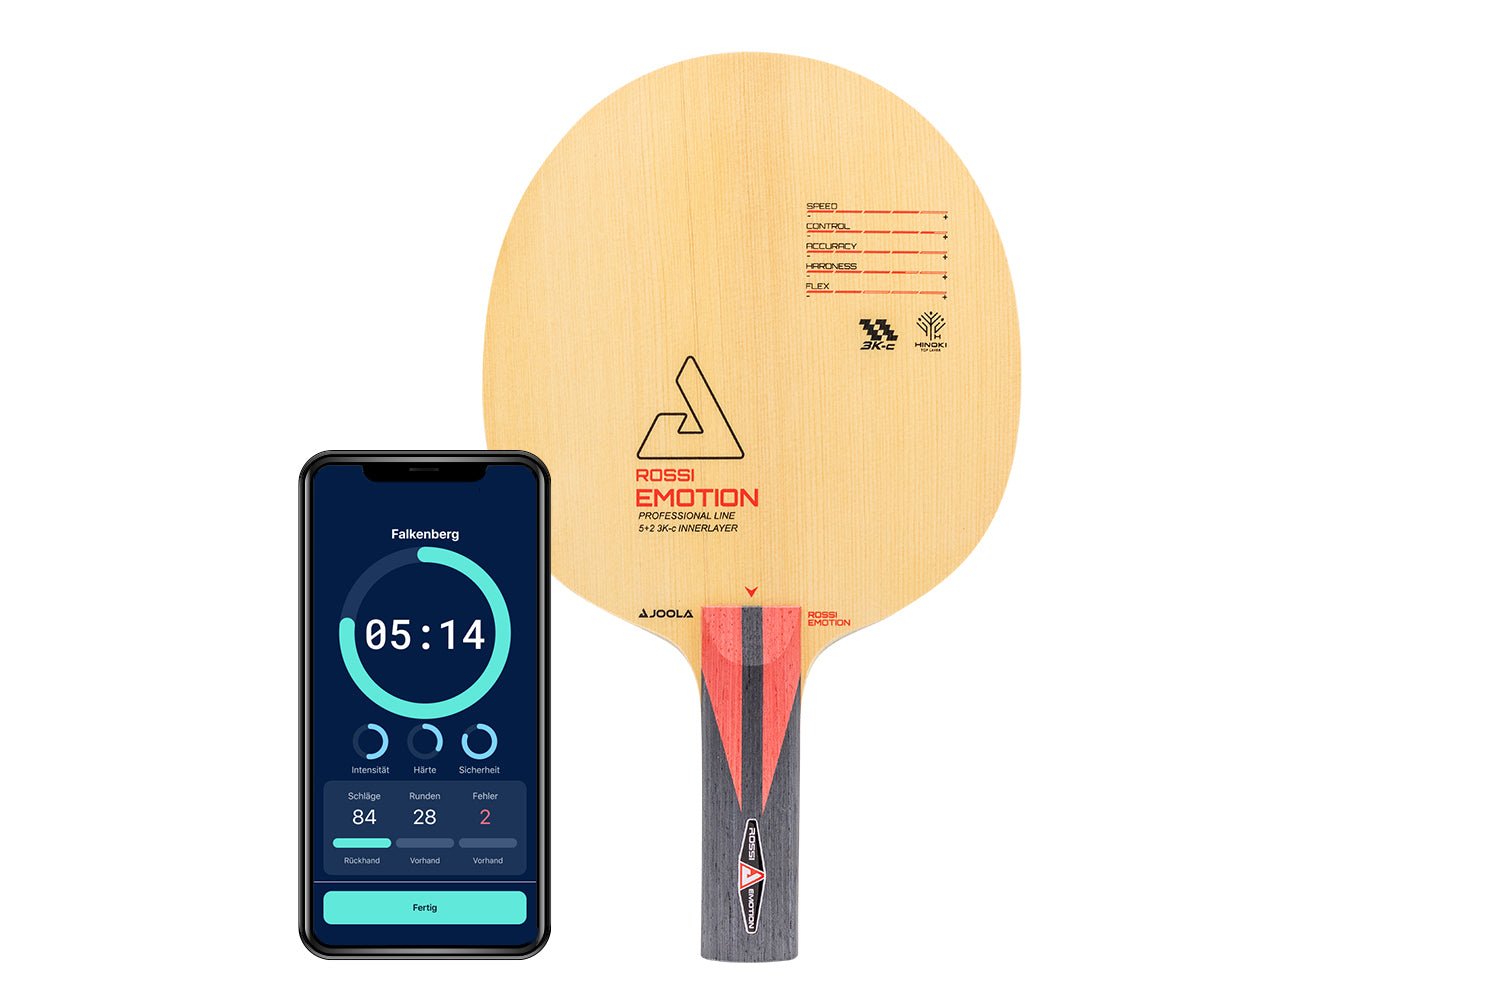 Joola Rossi Tischtennisschläger mit geradem Griff und Smartphone zeigt Daten des Schlägers vor weißem Hintergrund